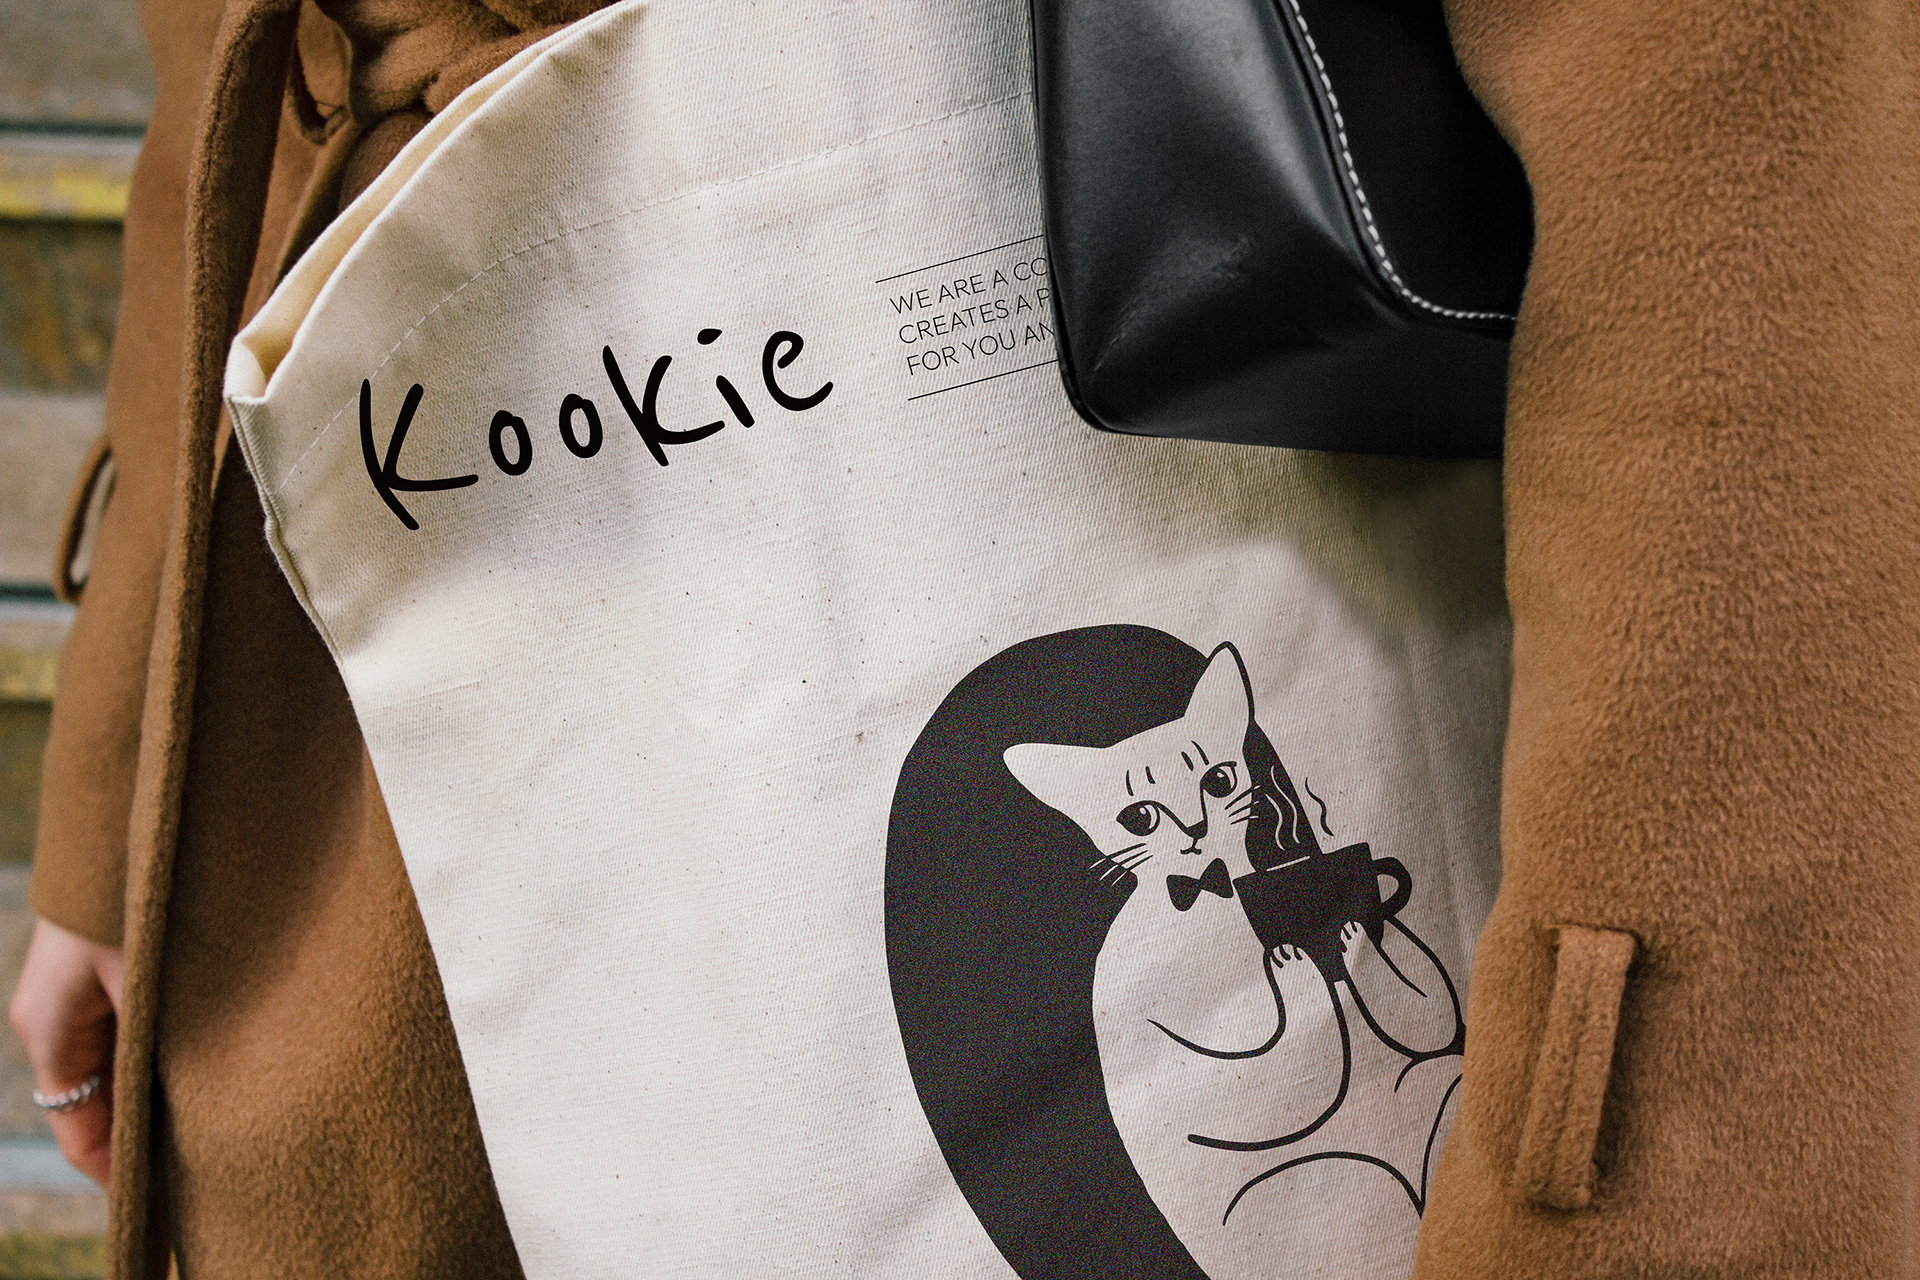 Kookie咖啡馆品牌视觉设计